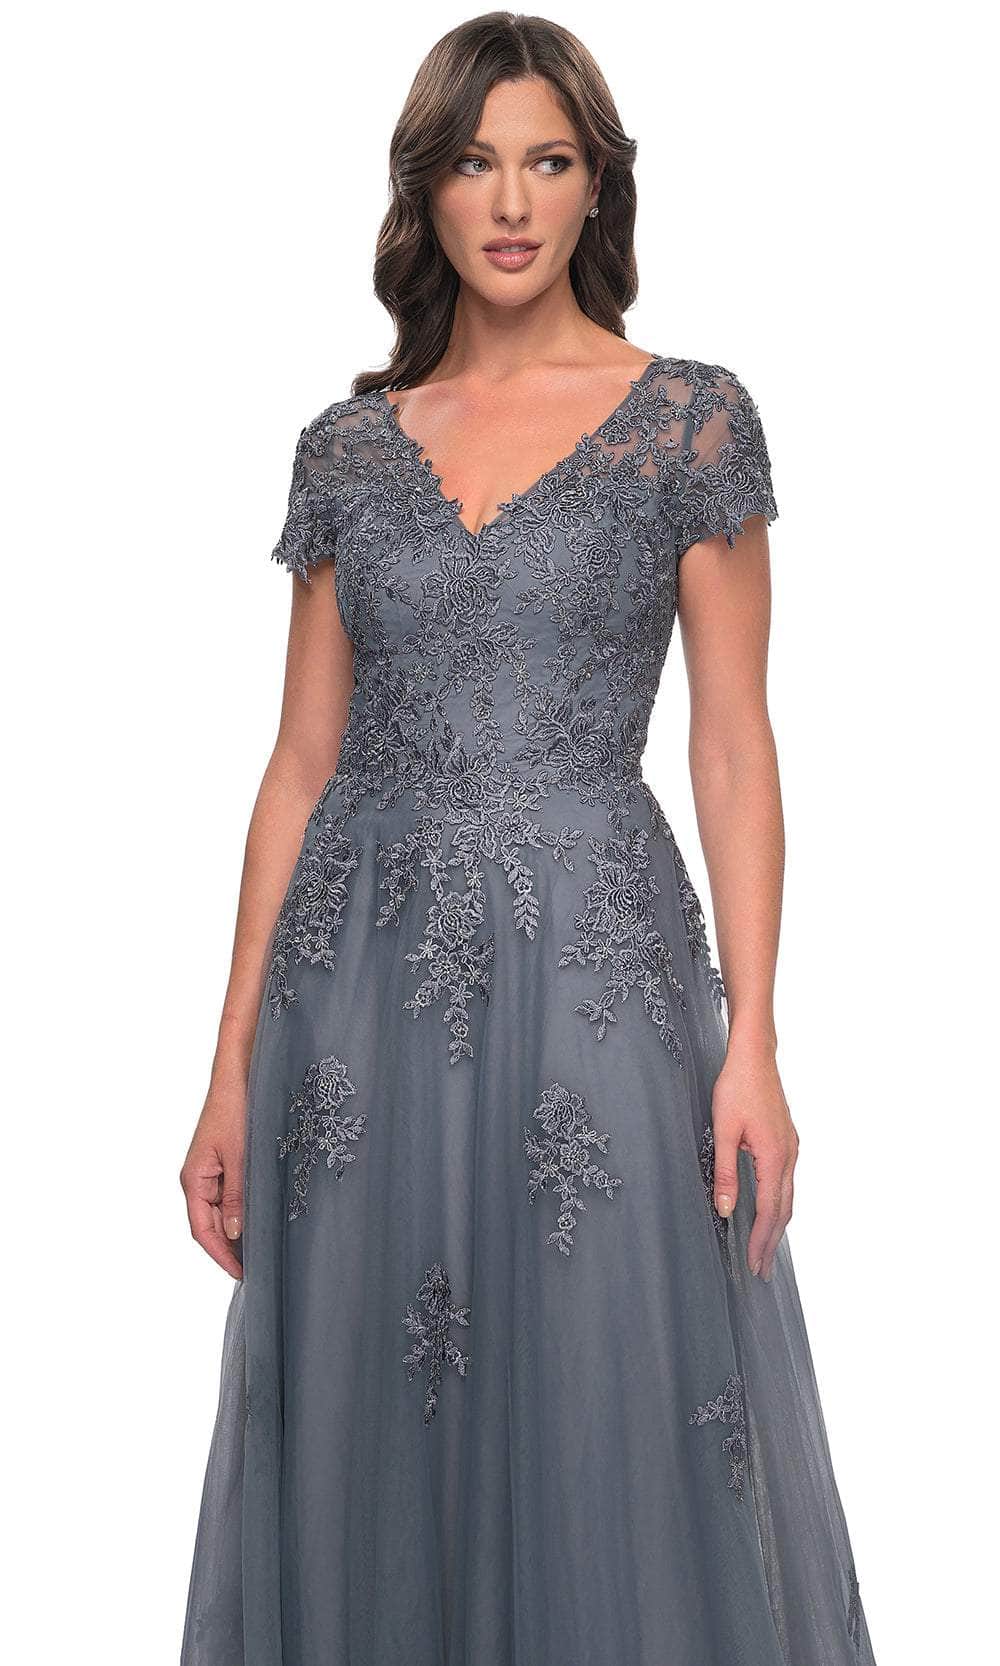 La Femme 30228 - Embroidered A-Line Formal Dress Evening Dresses